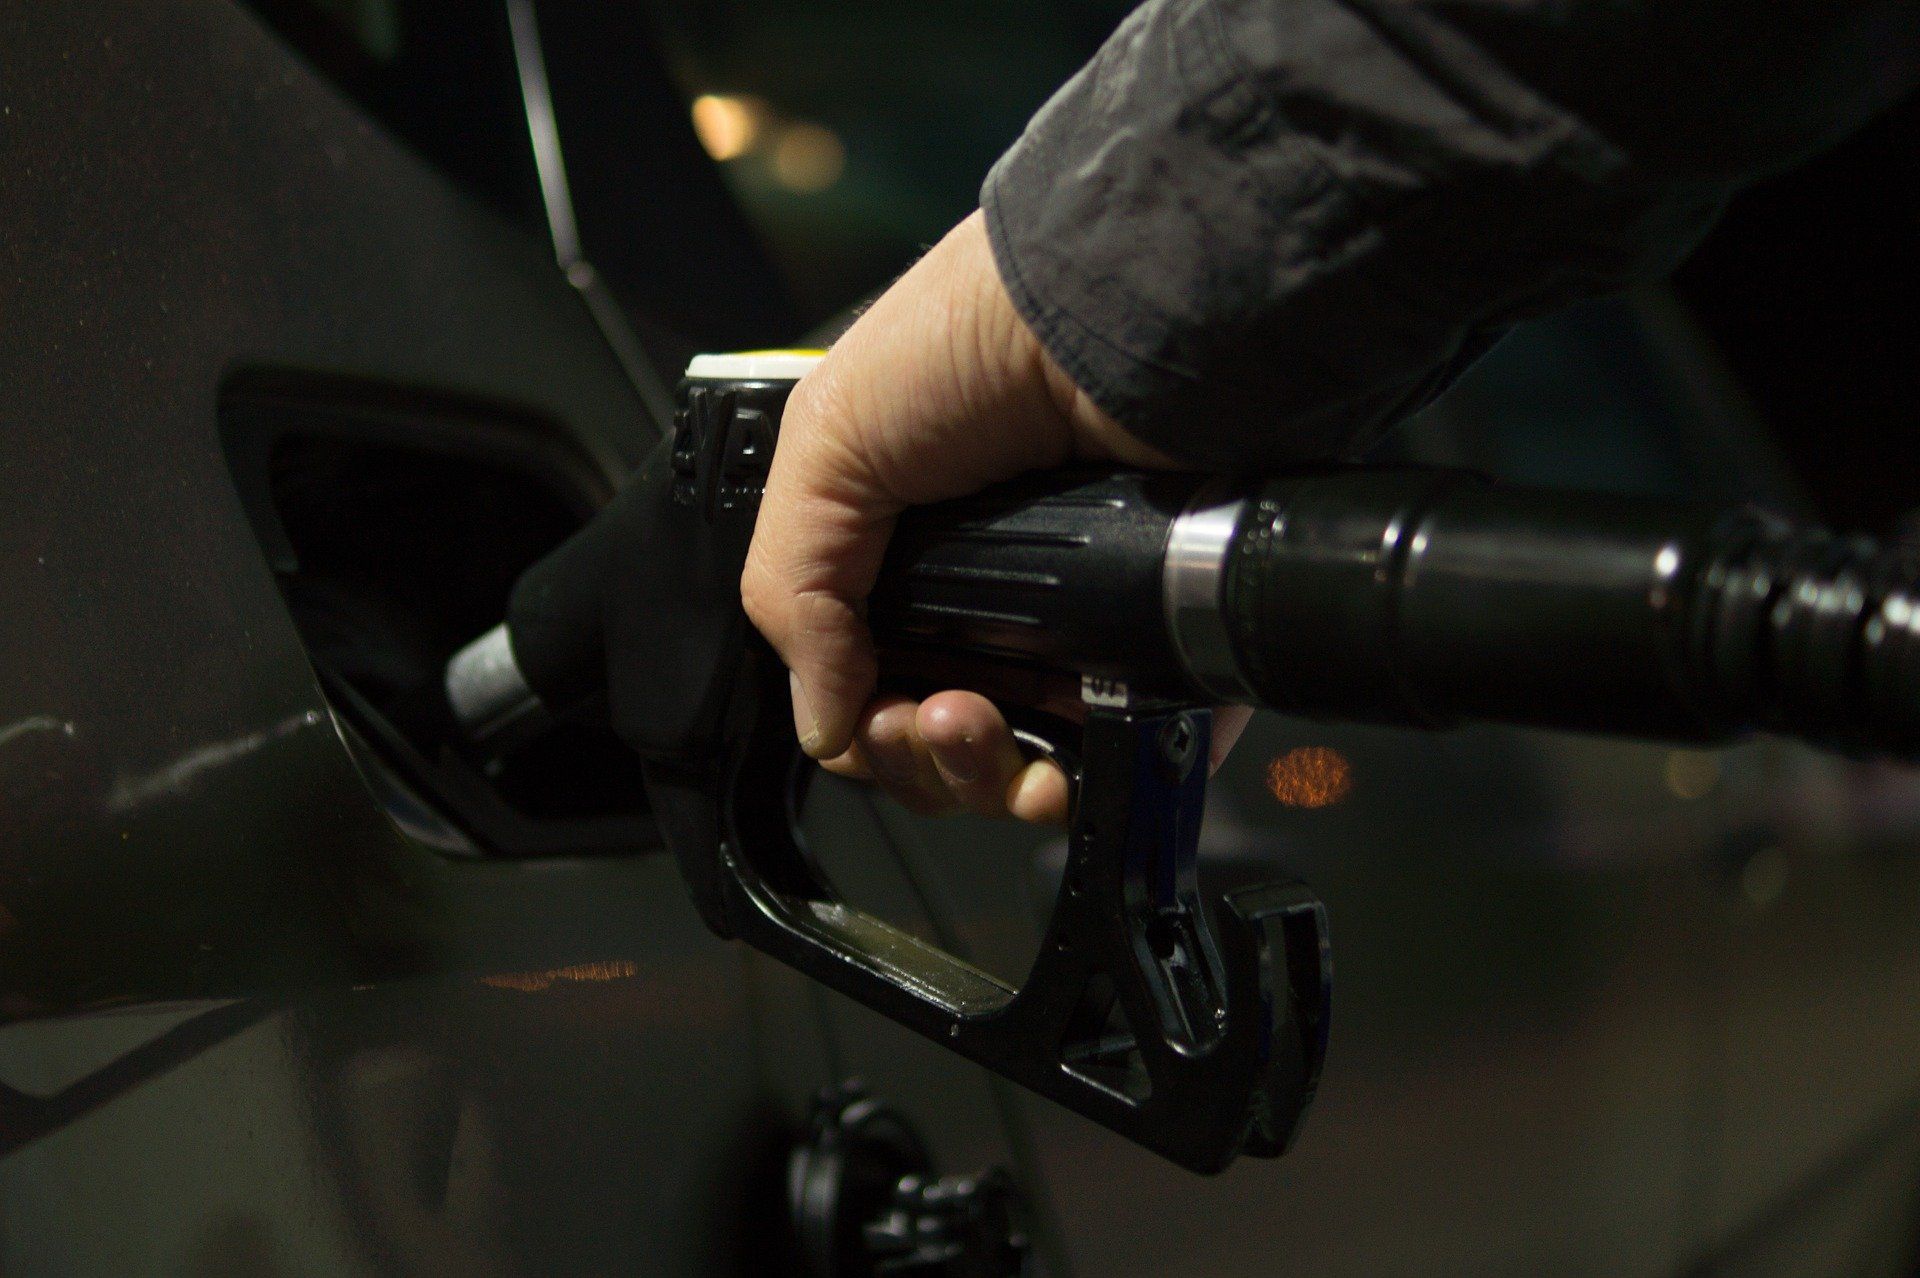 Fuel price July 21, 2022: Petrol Rs 106.31, diesel Rs 94.27 in Mumbai